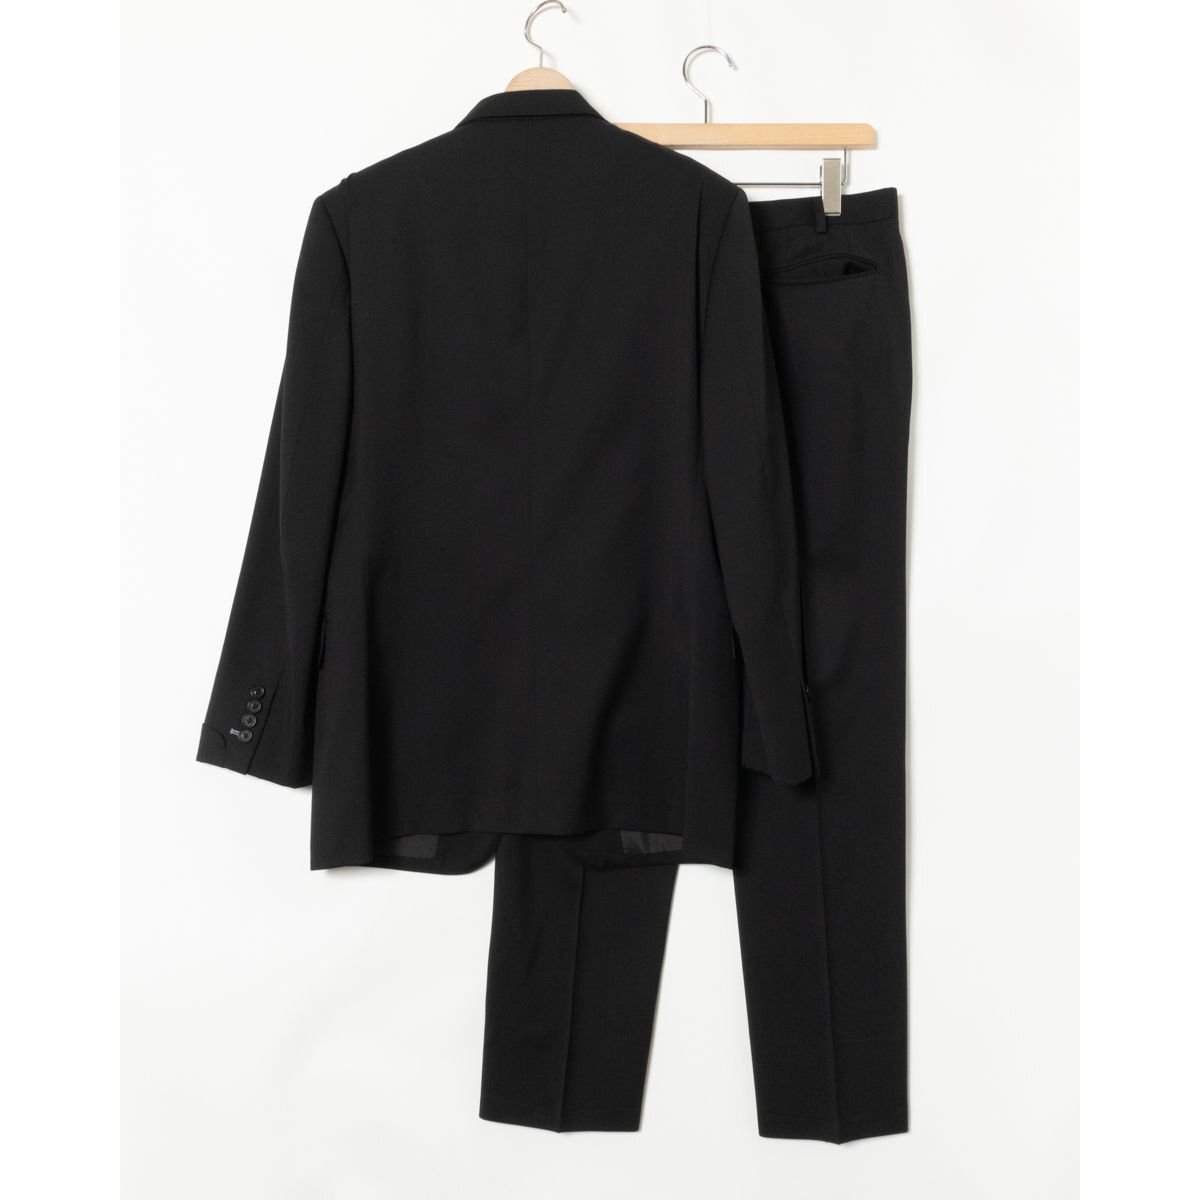 [1 иен старт ]BURBERRY BLACK LABEL Burberry манжеты дизайн ngru костюм 3 кнопка необшитый на спине tuck брюки шерсть 100% одноцветный чёрный 38L